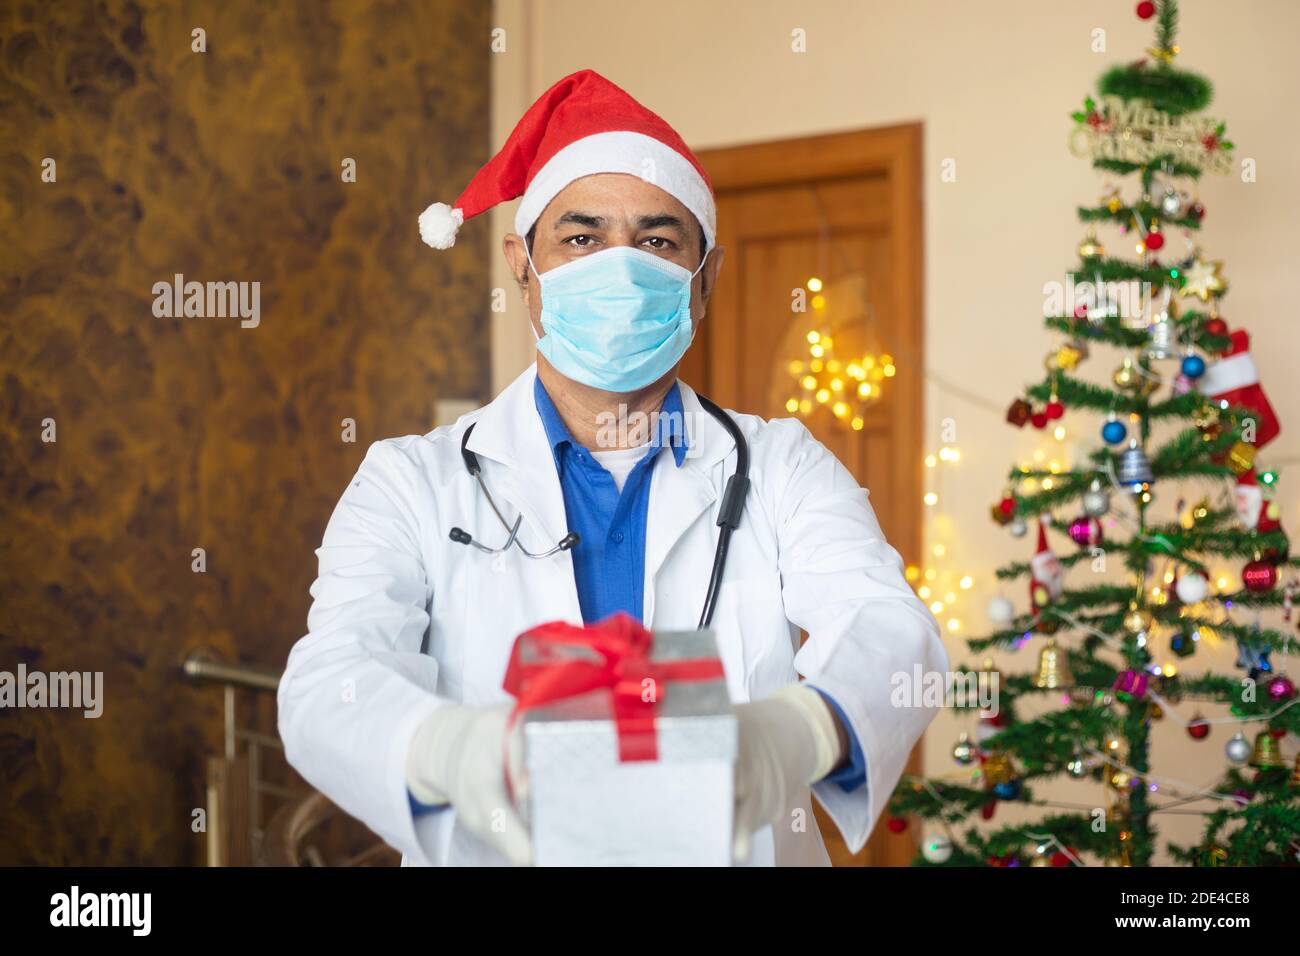 Medico indossando maschera e cappello di santa mostrando confezione regalo di natale, celebrazione durante la pandemia covid-19, nuovo stile di vita normale. Sanità e medico. Foto Stock